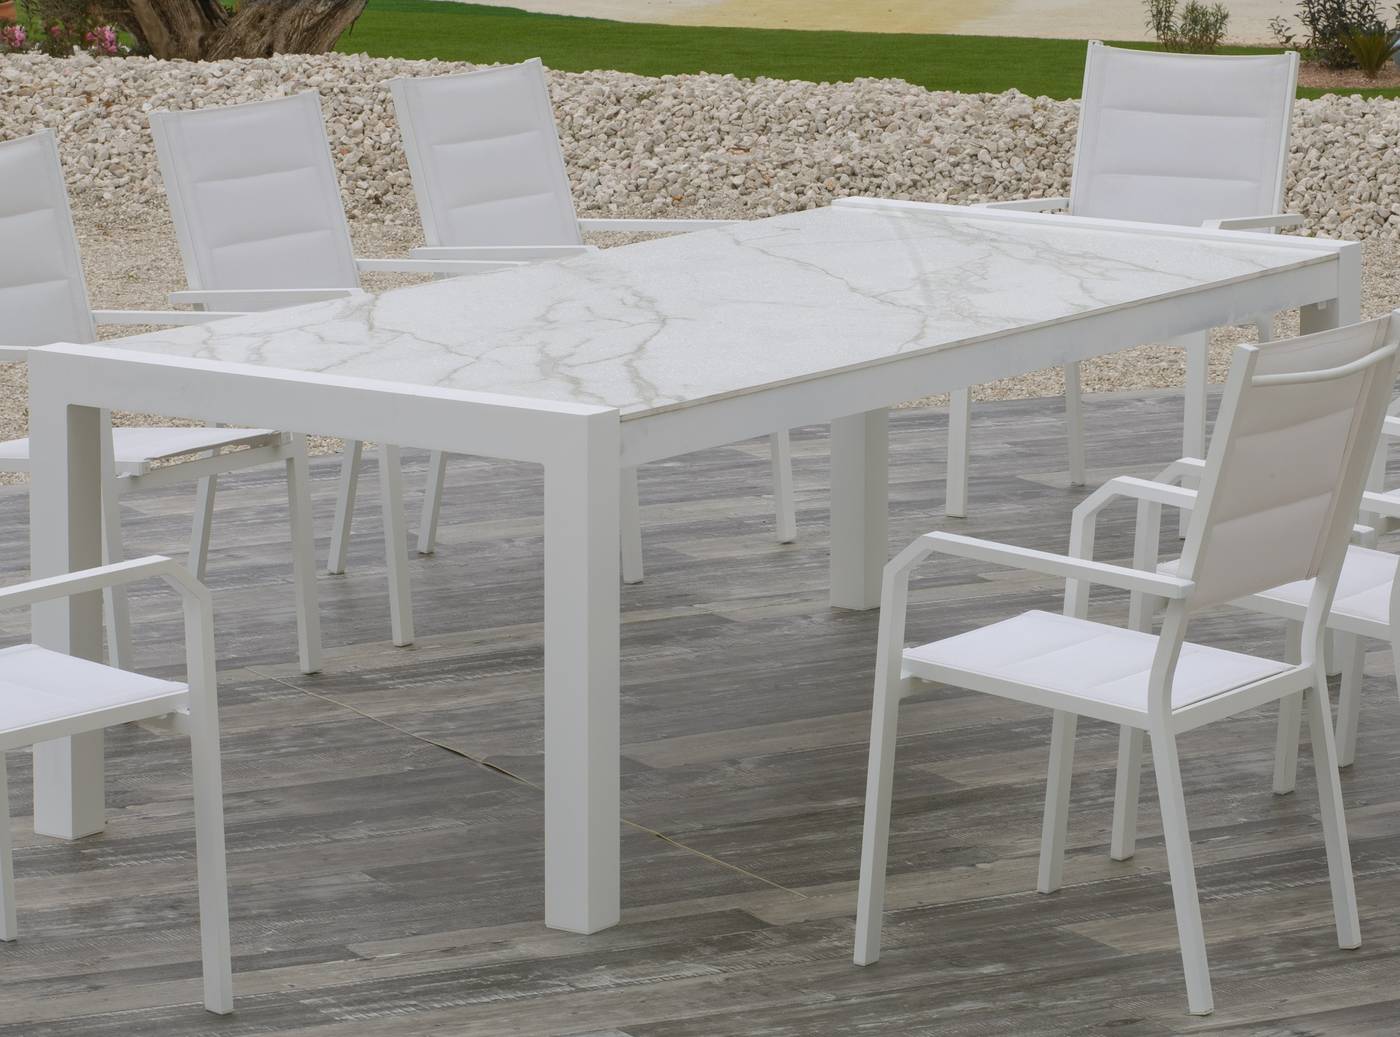 Mesa de aluminio rectangular de 220 cm. Tablero de piedra sinterizada de alta calidad. Disponible en varios colores.